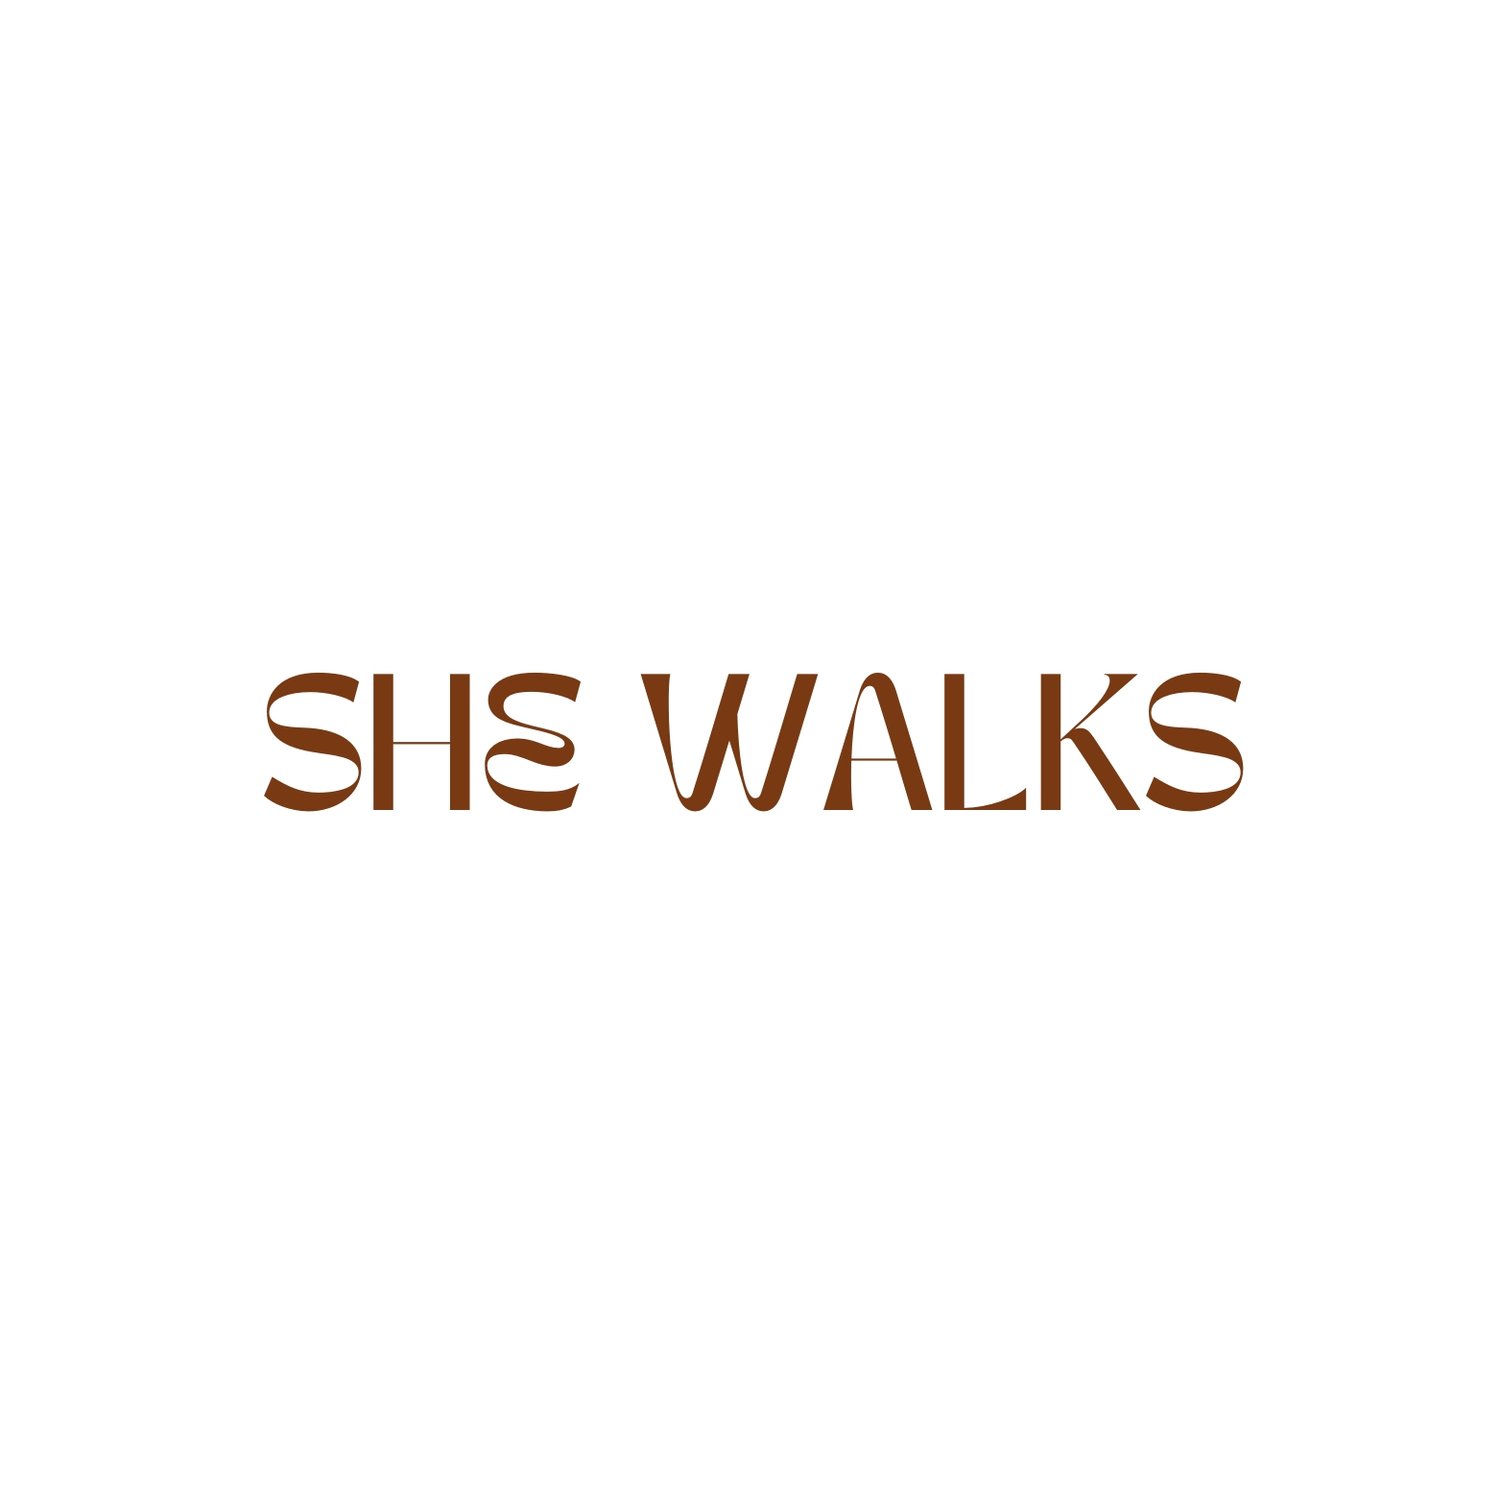 She Walks - Women&#39;s Walking Community in New Zealand